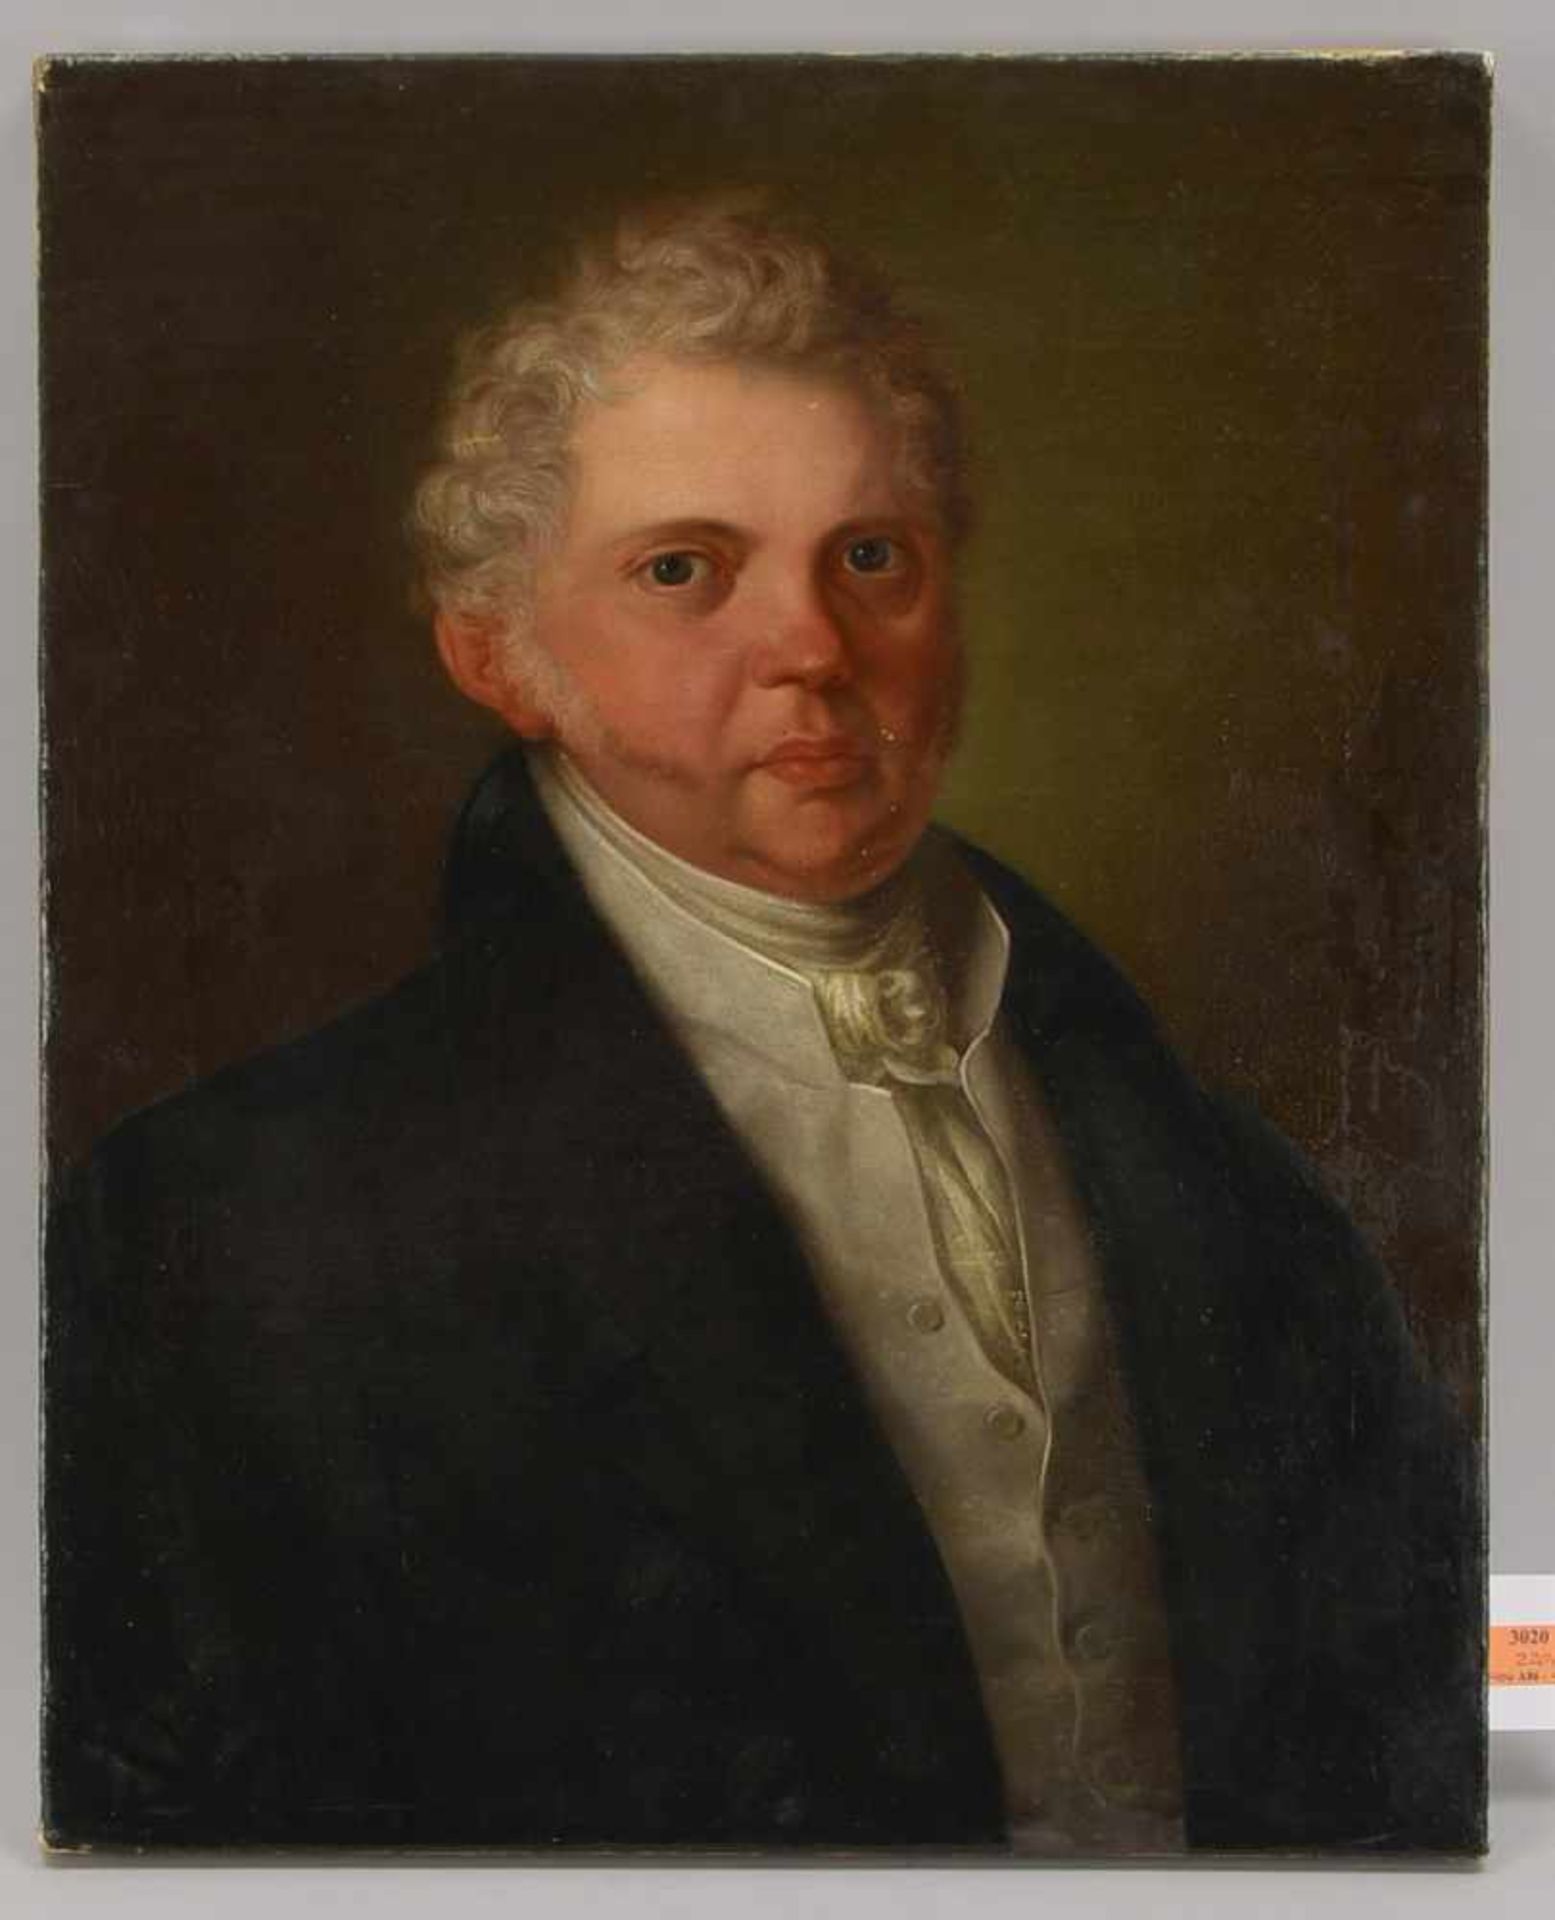 Gemälde (Biedermeier, um 1820), 'Herrenportrait', Öl auf Leinwand/doubliert; ungerahmt; Maße 62,5